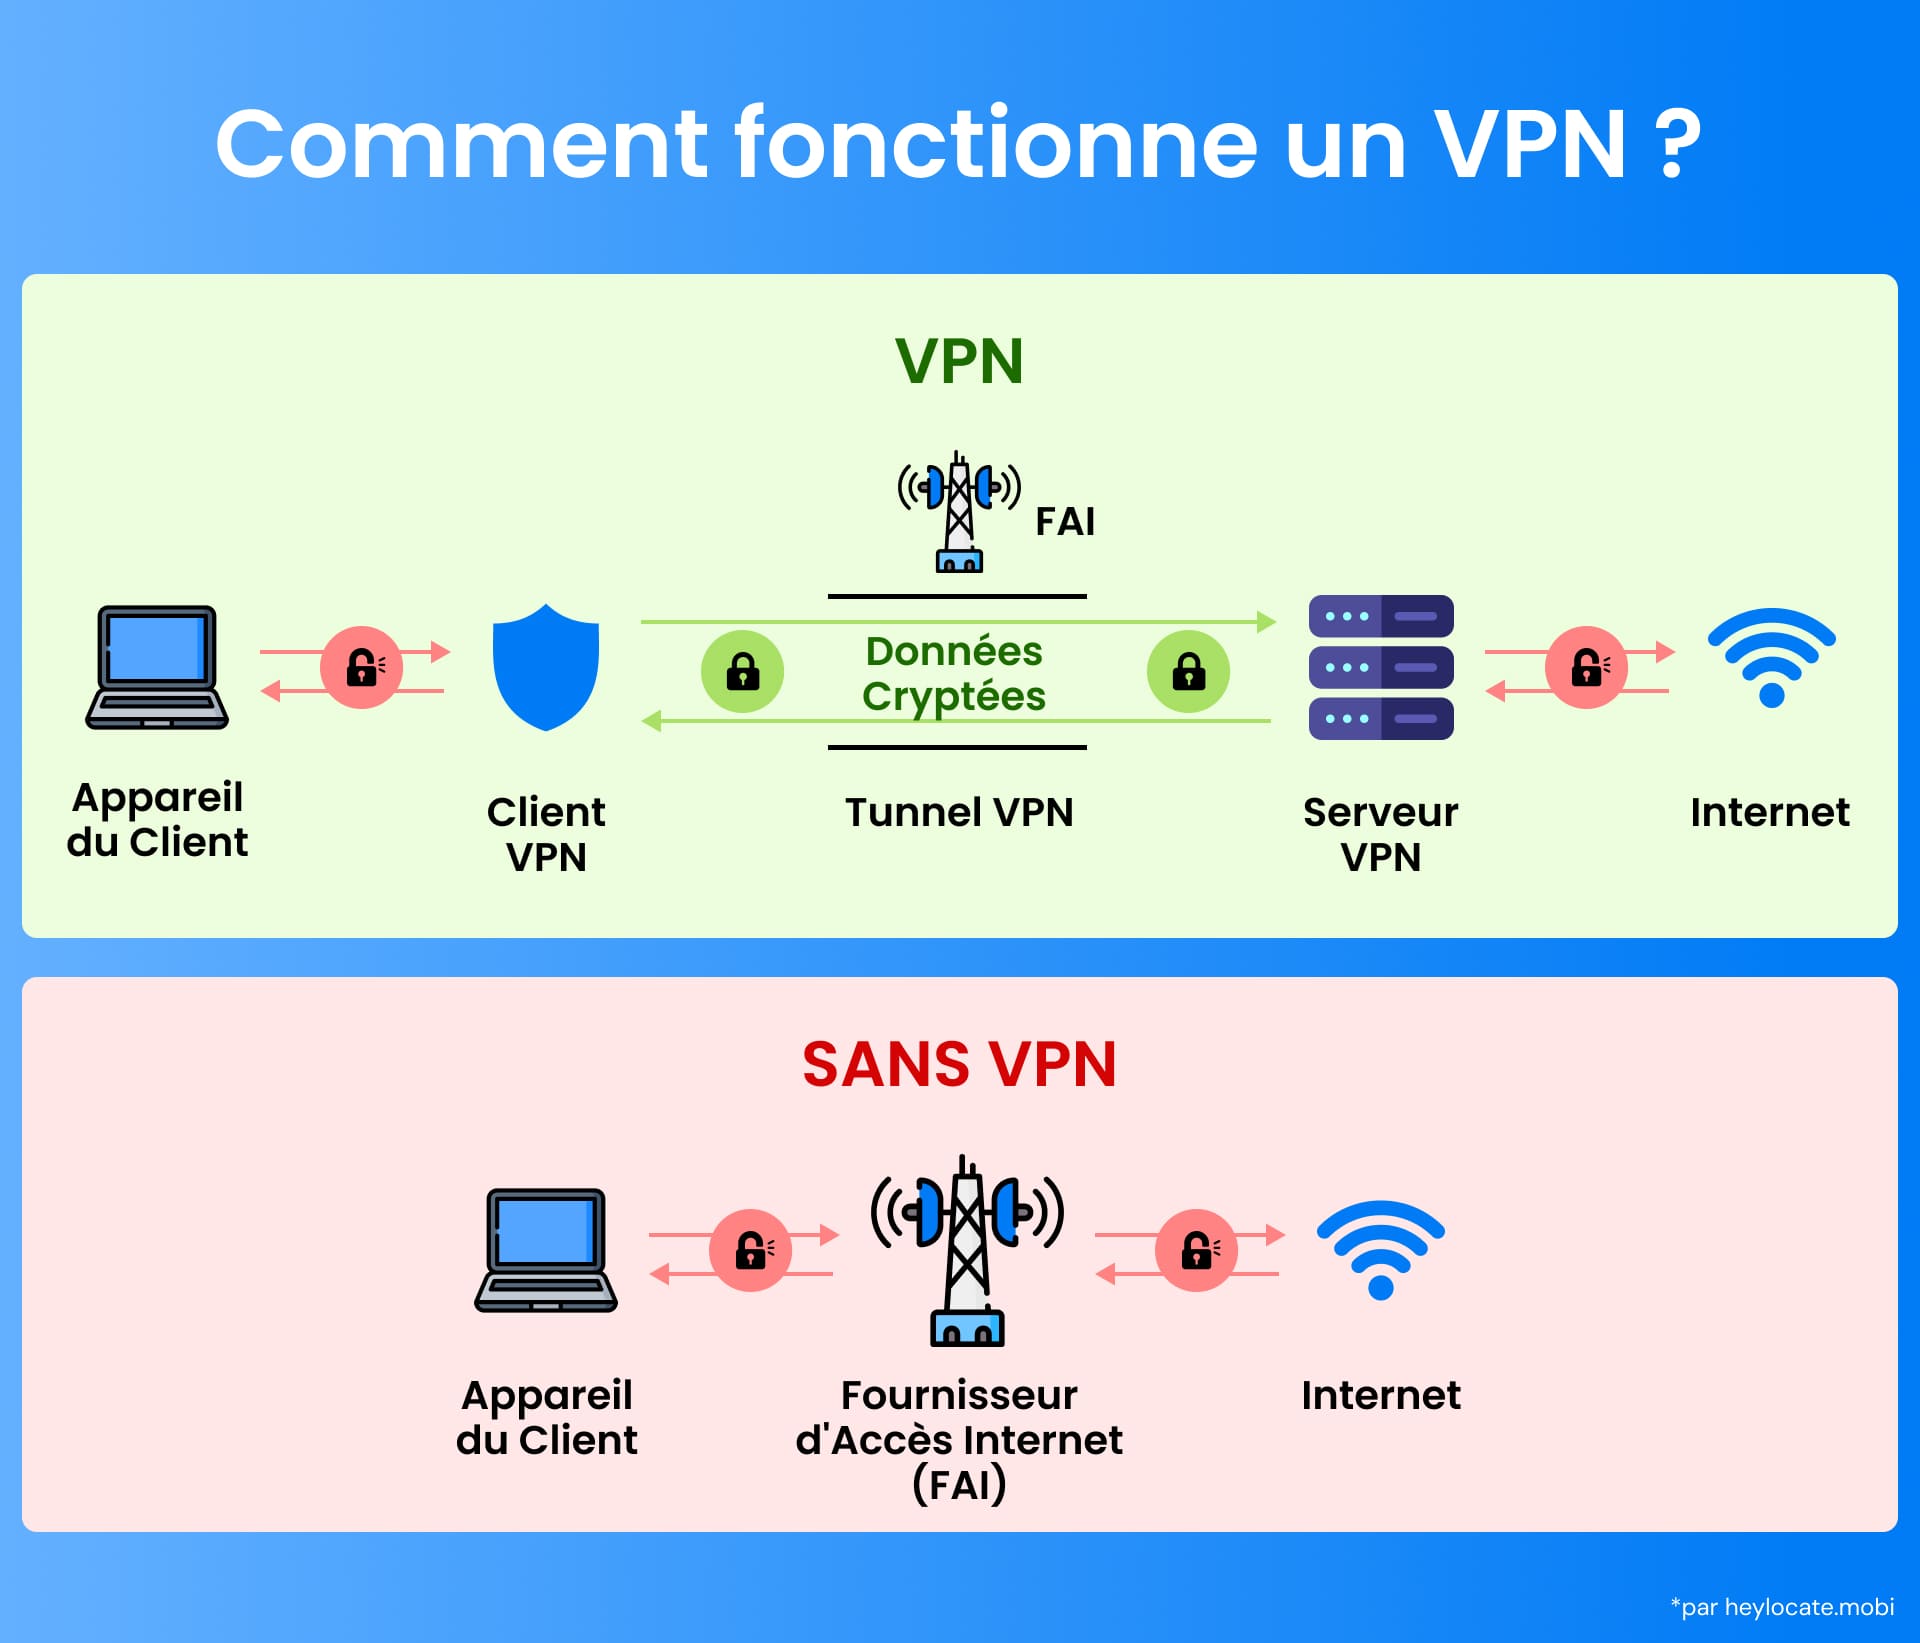 Infographie montrant le processus de cryptage et d'acheminement des données d'un VPN par rapport à une connexion directe à l'internet.